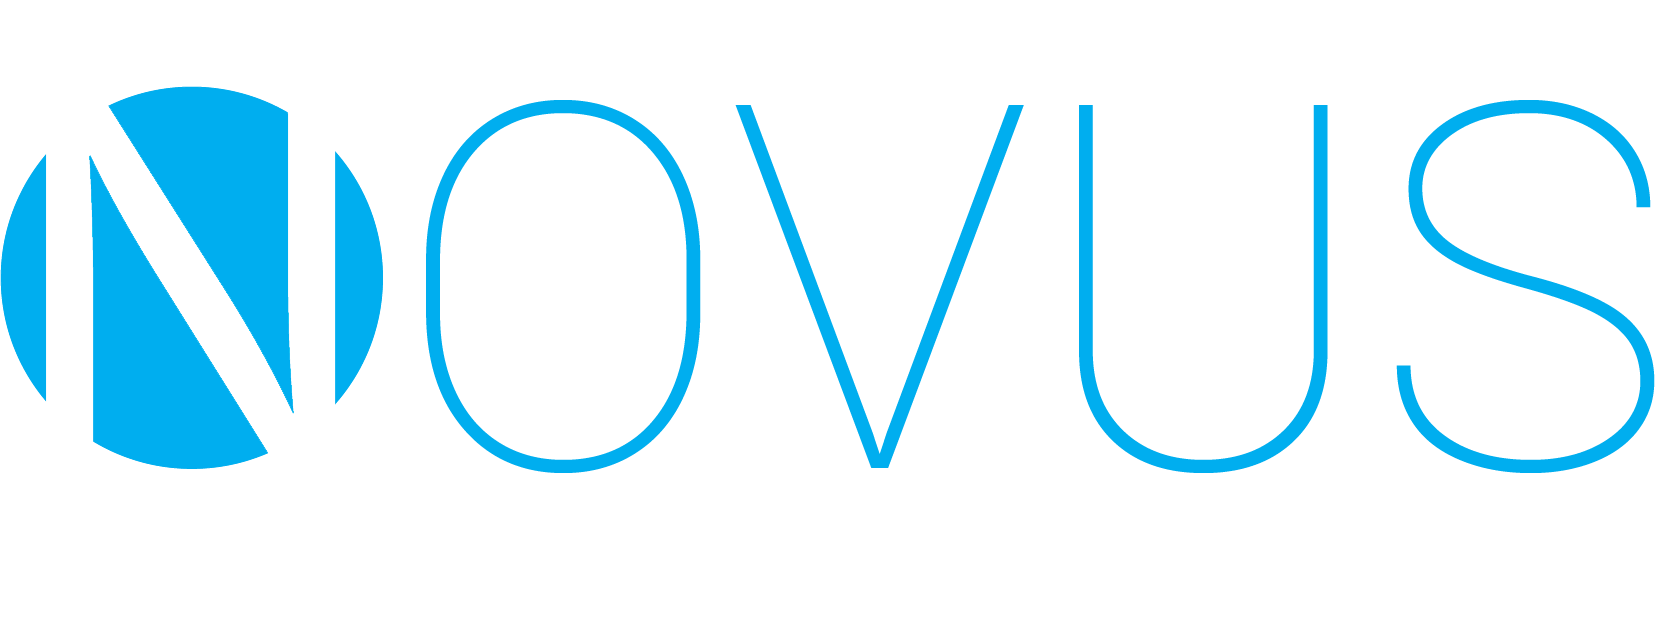 NovusClub logo